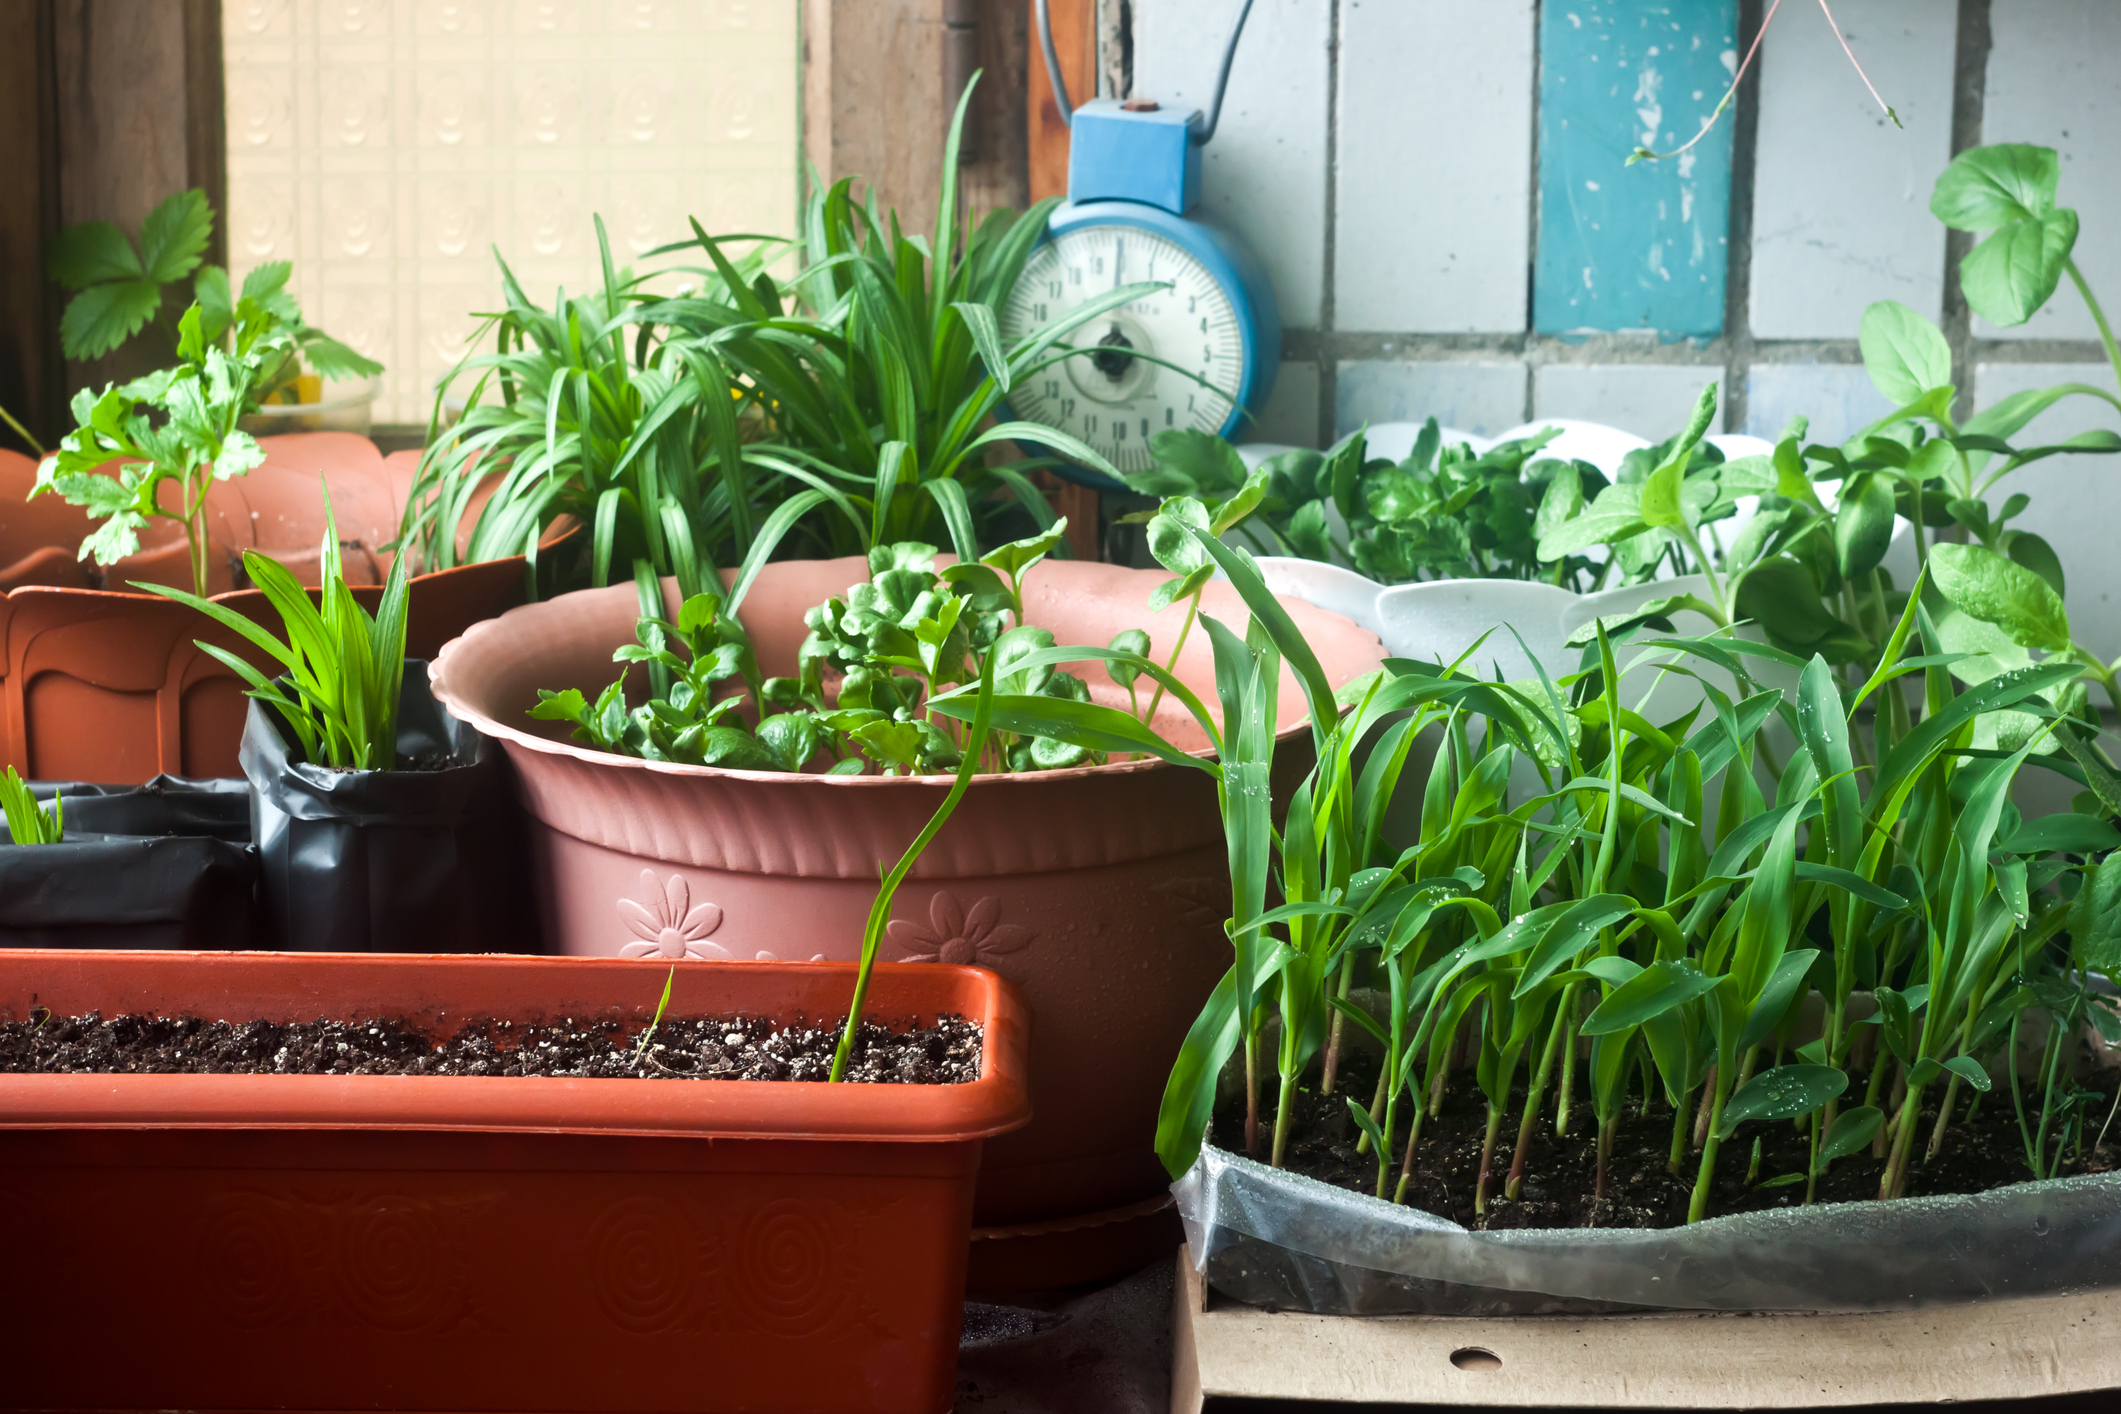 Essayez de privilégier les pots en terre cuite pour vos plantes d